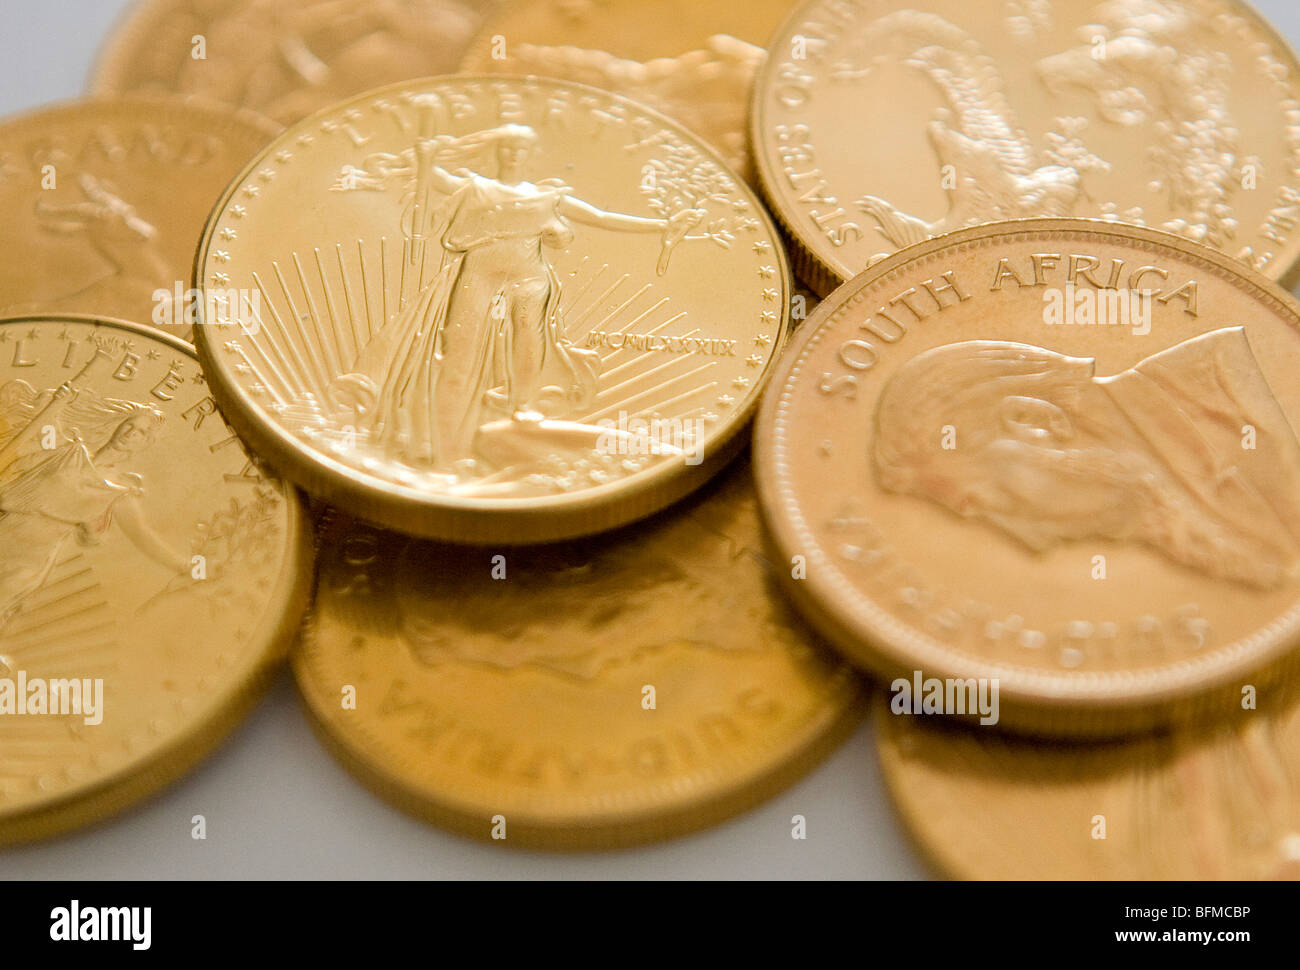 American Eagle, krugerrand sud-africain et florin néerlandais des pièces d'or. Banque D'Images